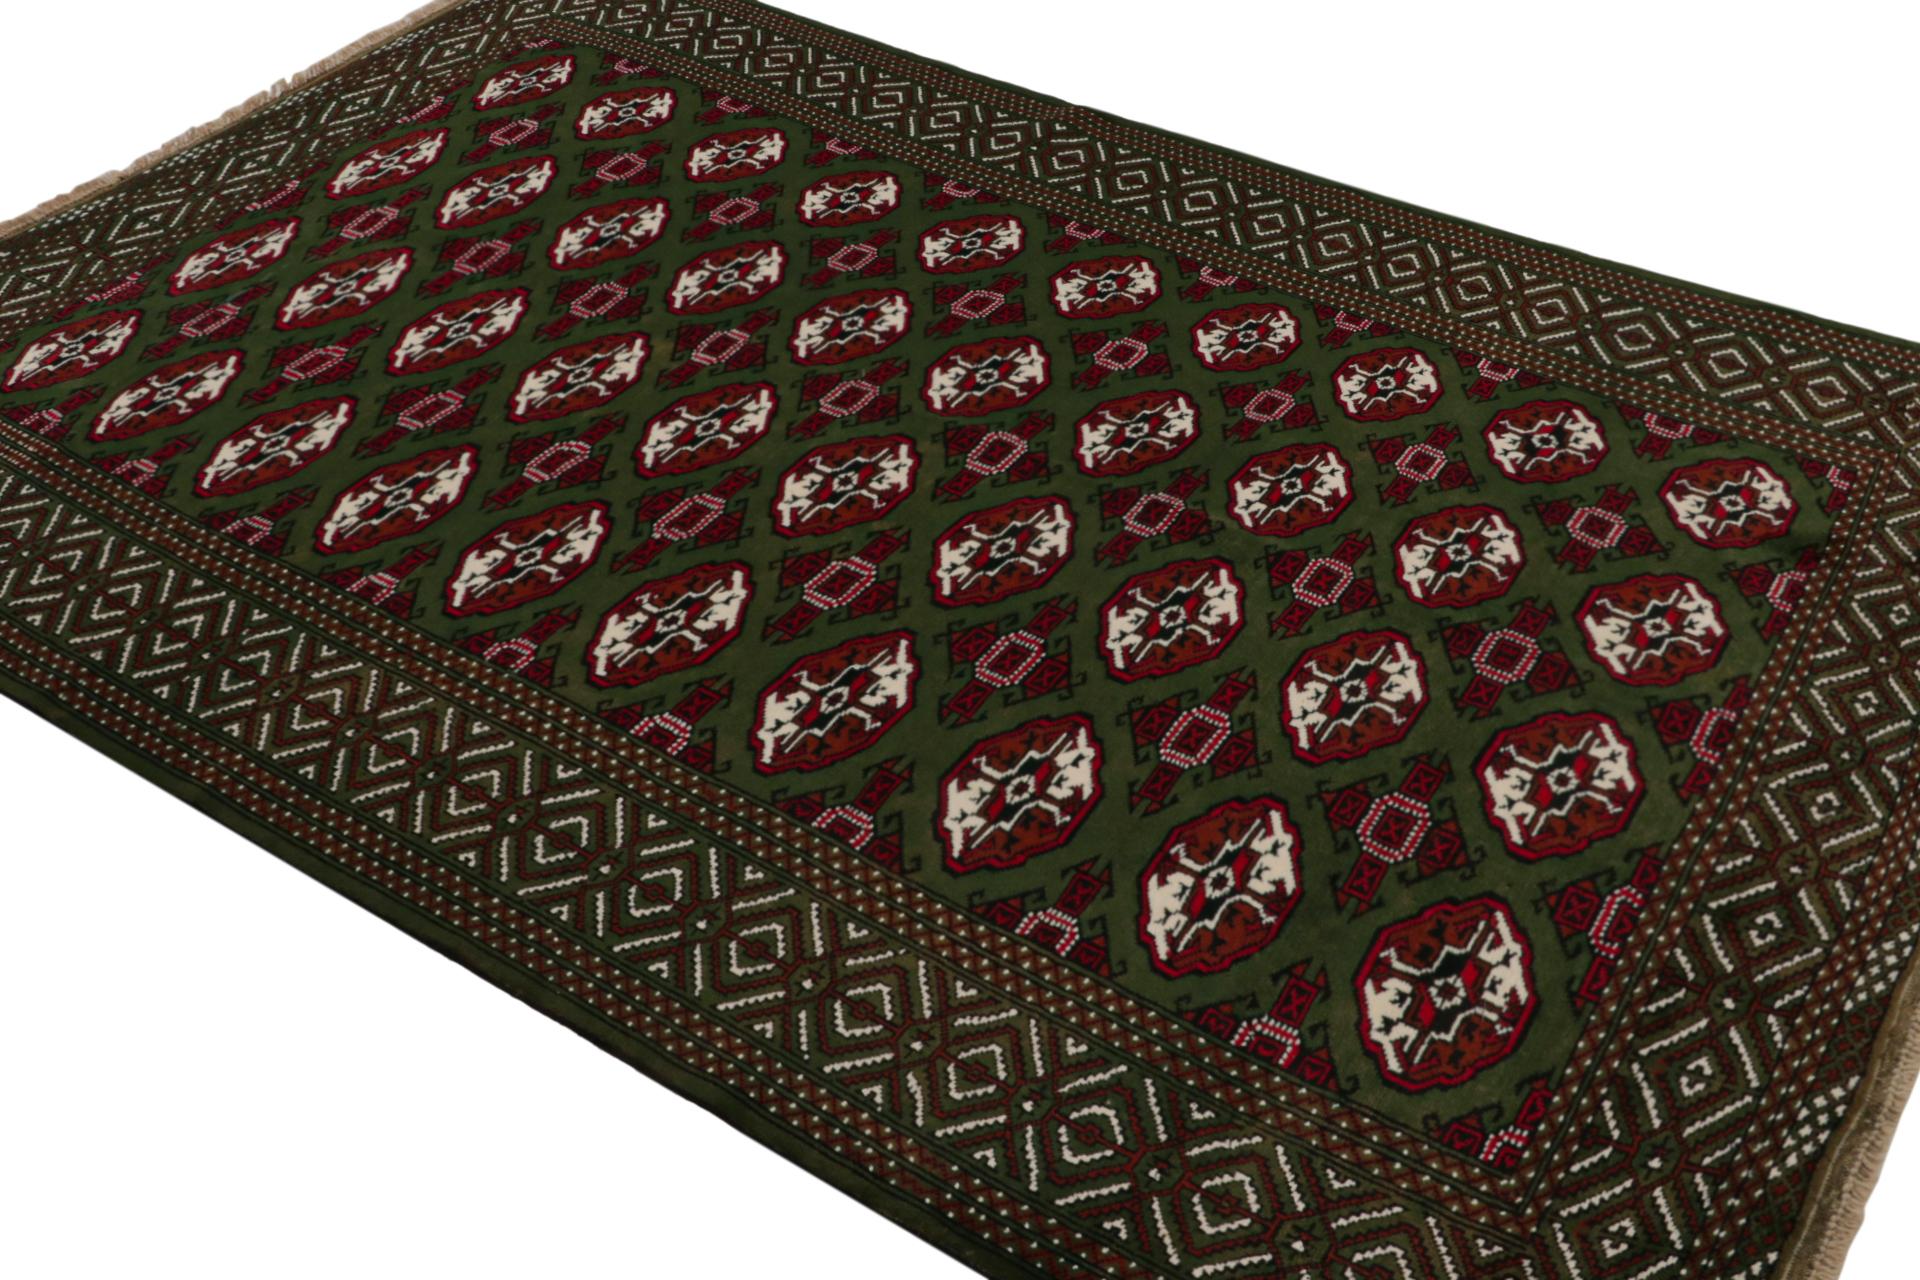 Noué à la main en laine, ce tapis Baluch 7x9 représente une nouvelle ligne de tapis tribaux dans la Collection Modern Classics de Rug & Kilim. Chaque pièce  représente le travail des femmes tisseuses en Afghanistan, préservant la riche tradition de